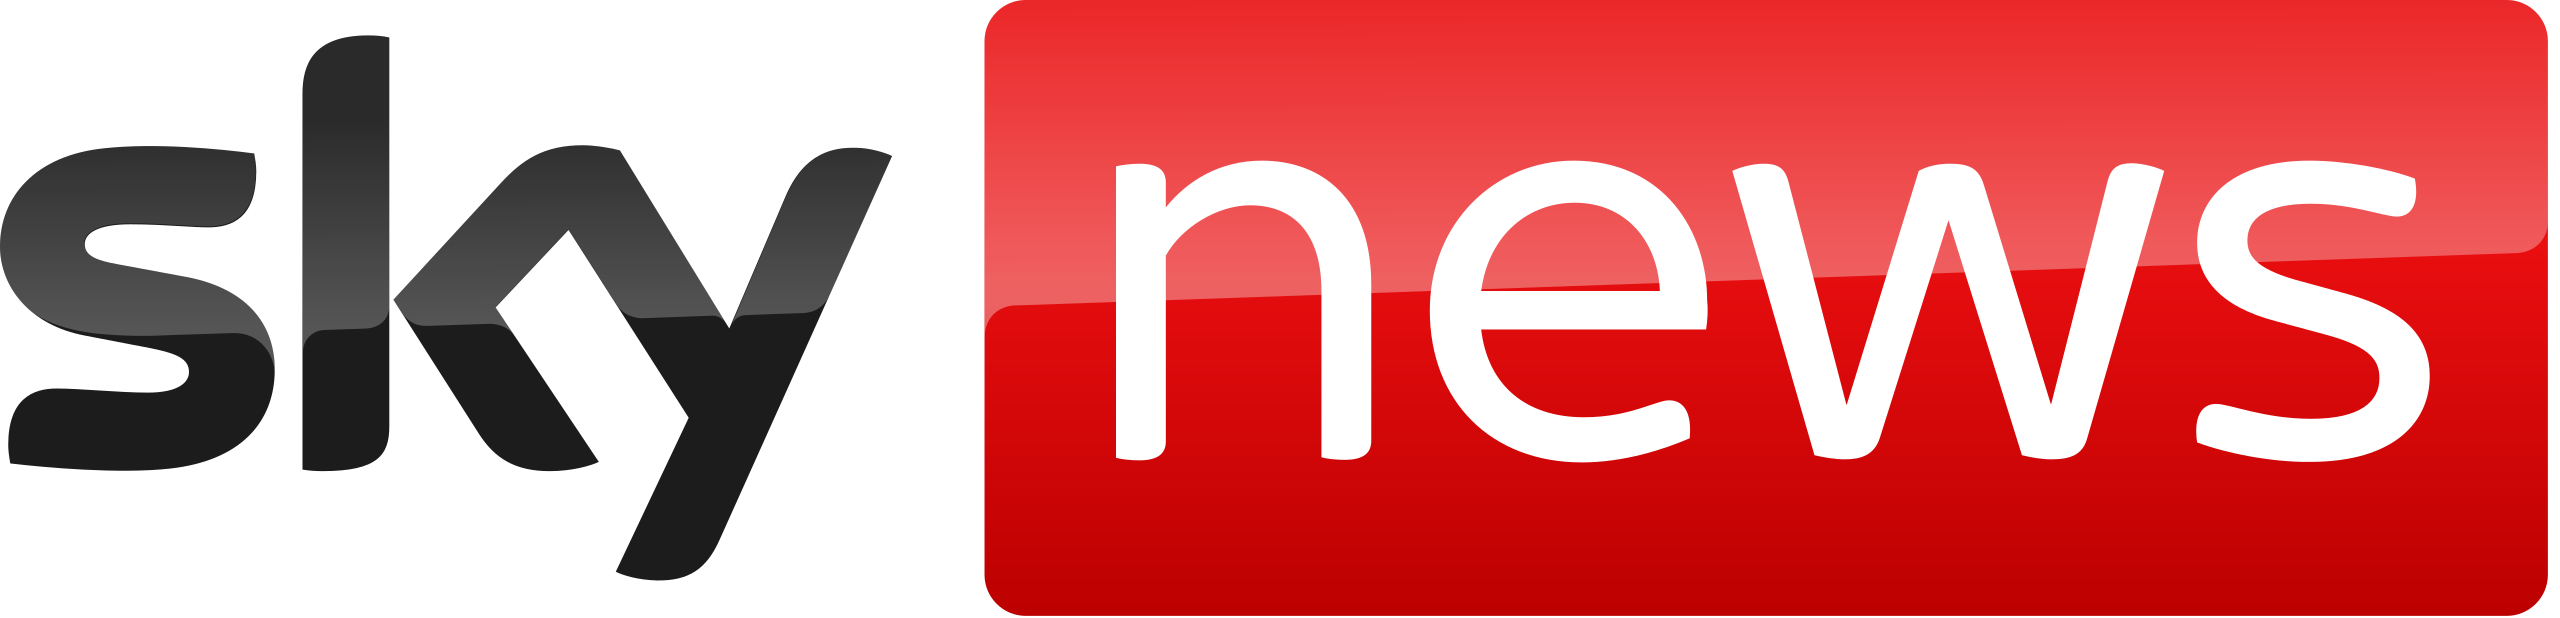 Sky_News_logo